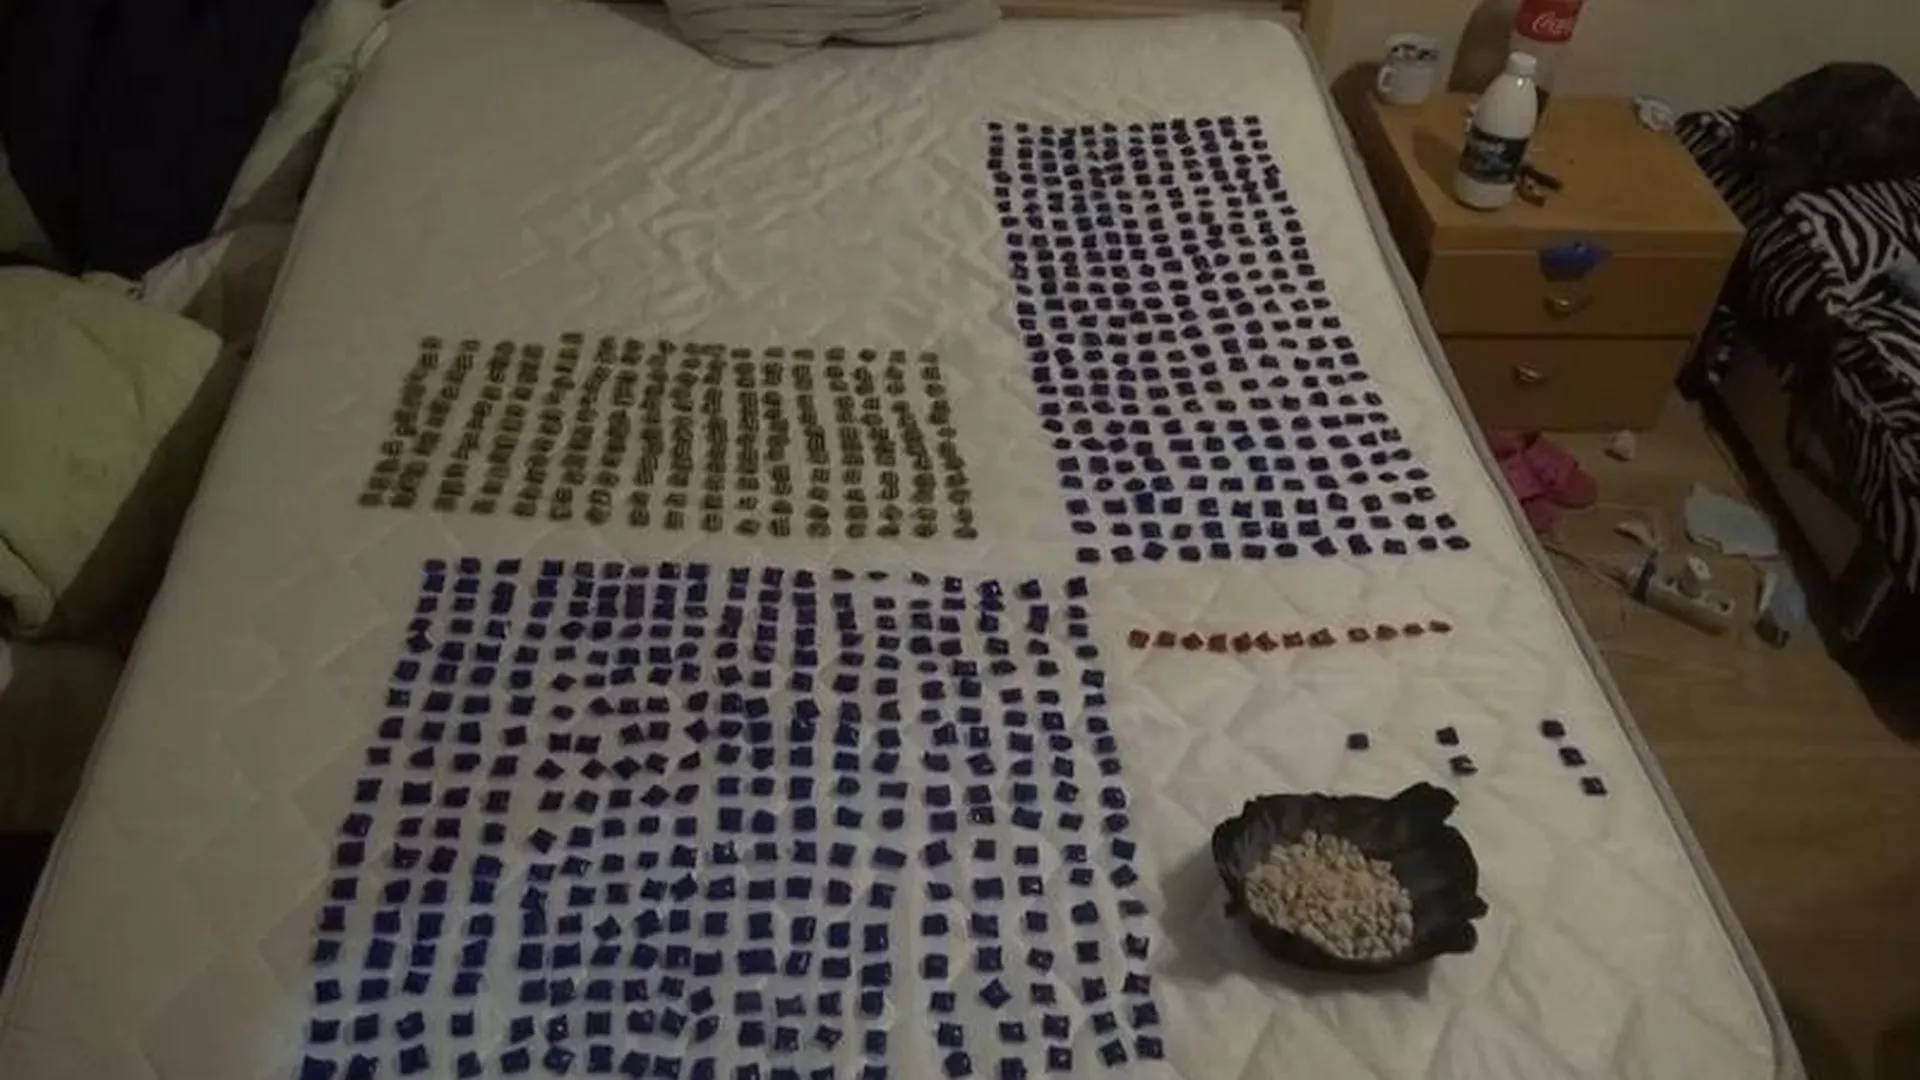 Девятьсот свертков с наркотиками нашли у двух дилеров во Фрязино